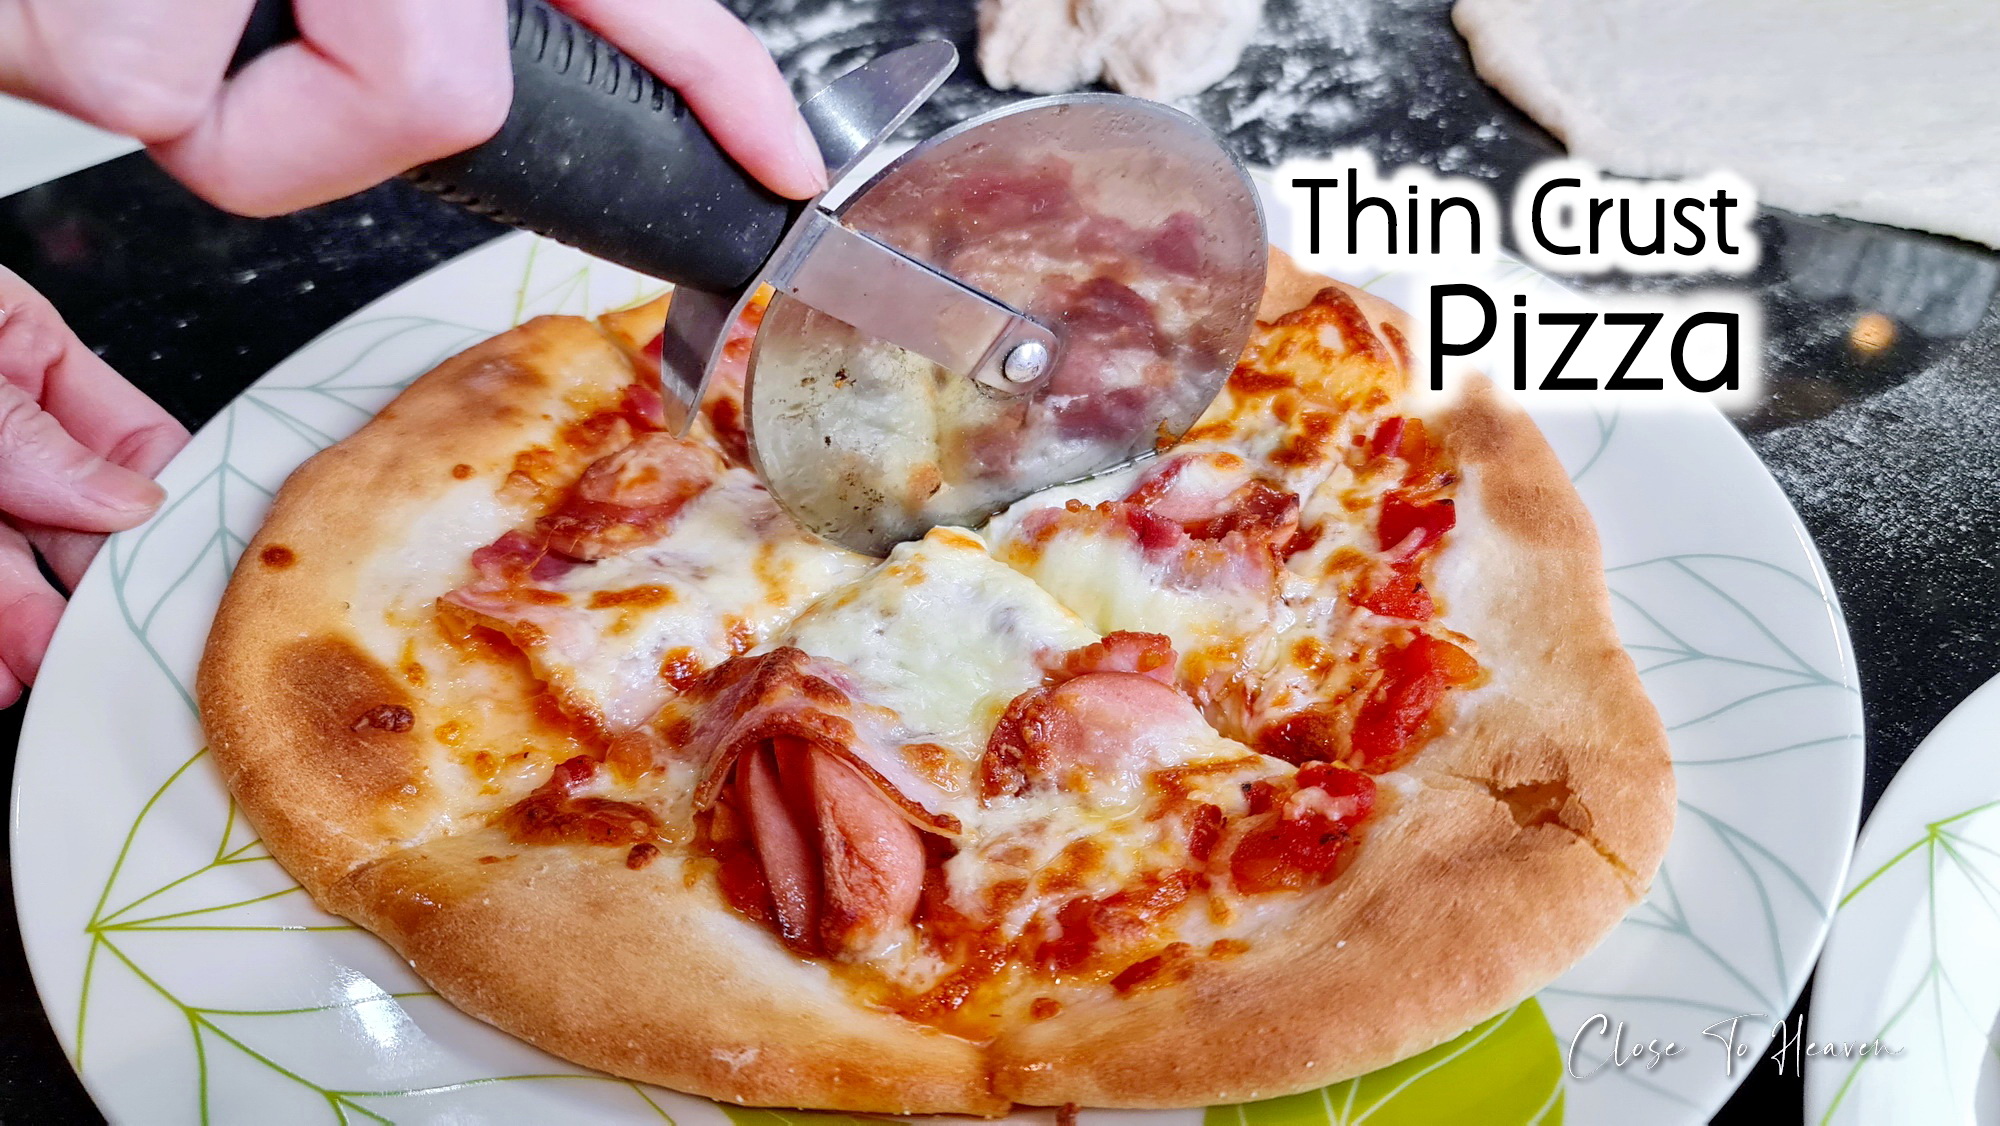 Thin Crust Pizza พิซซ่าแป้งบาง ครัสท์กรอบ